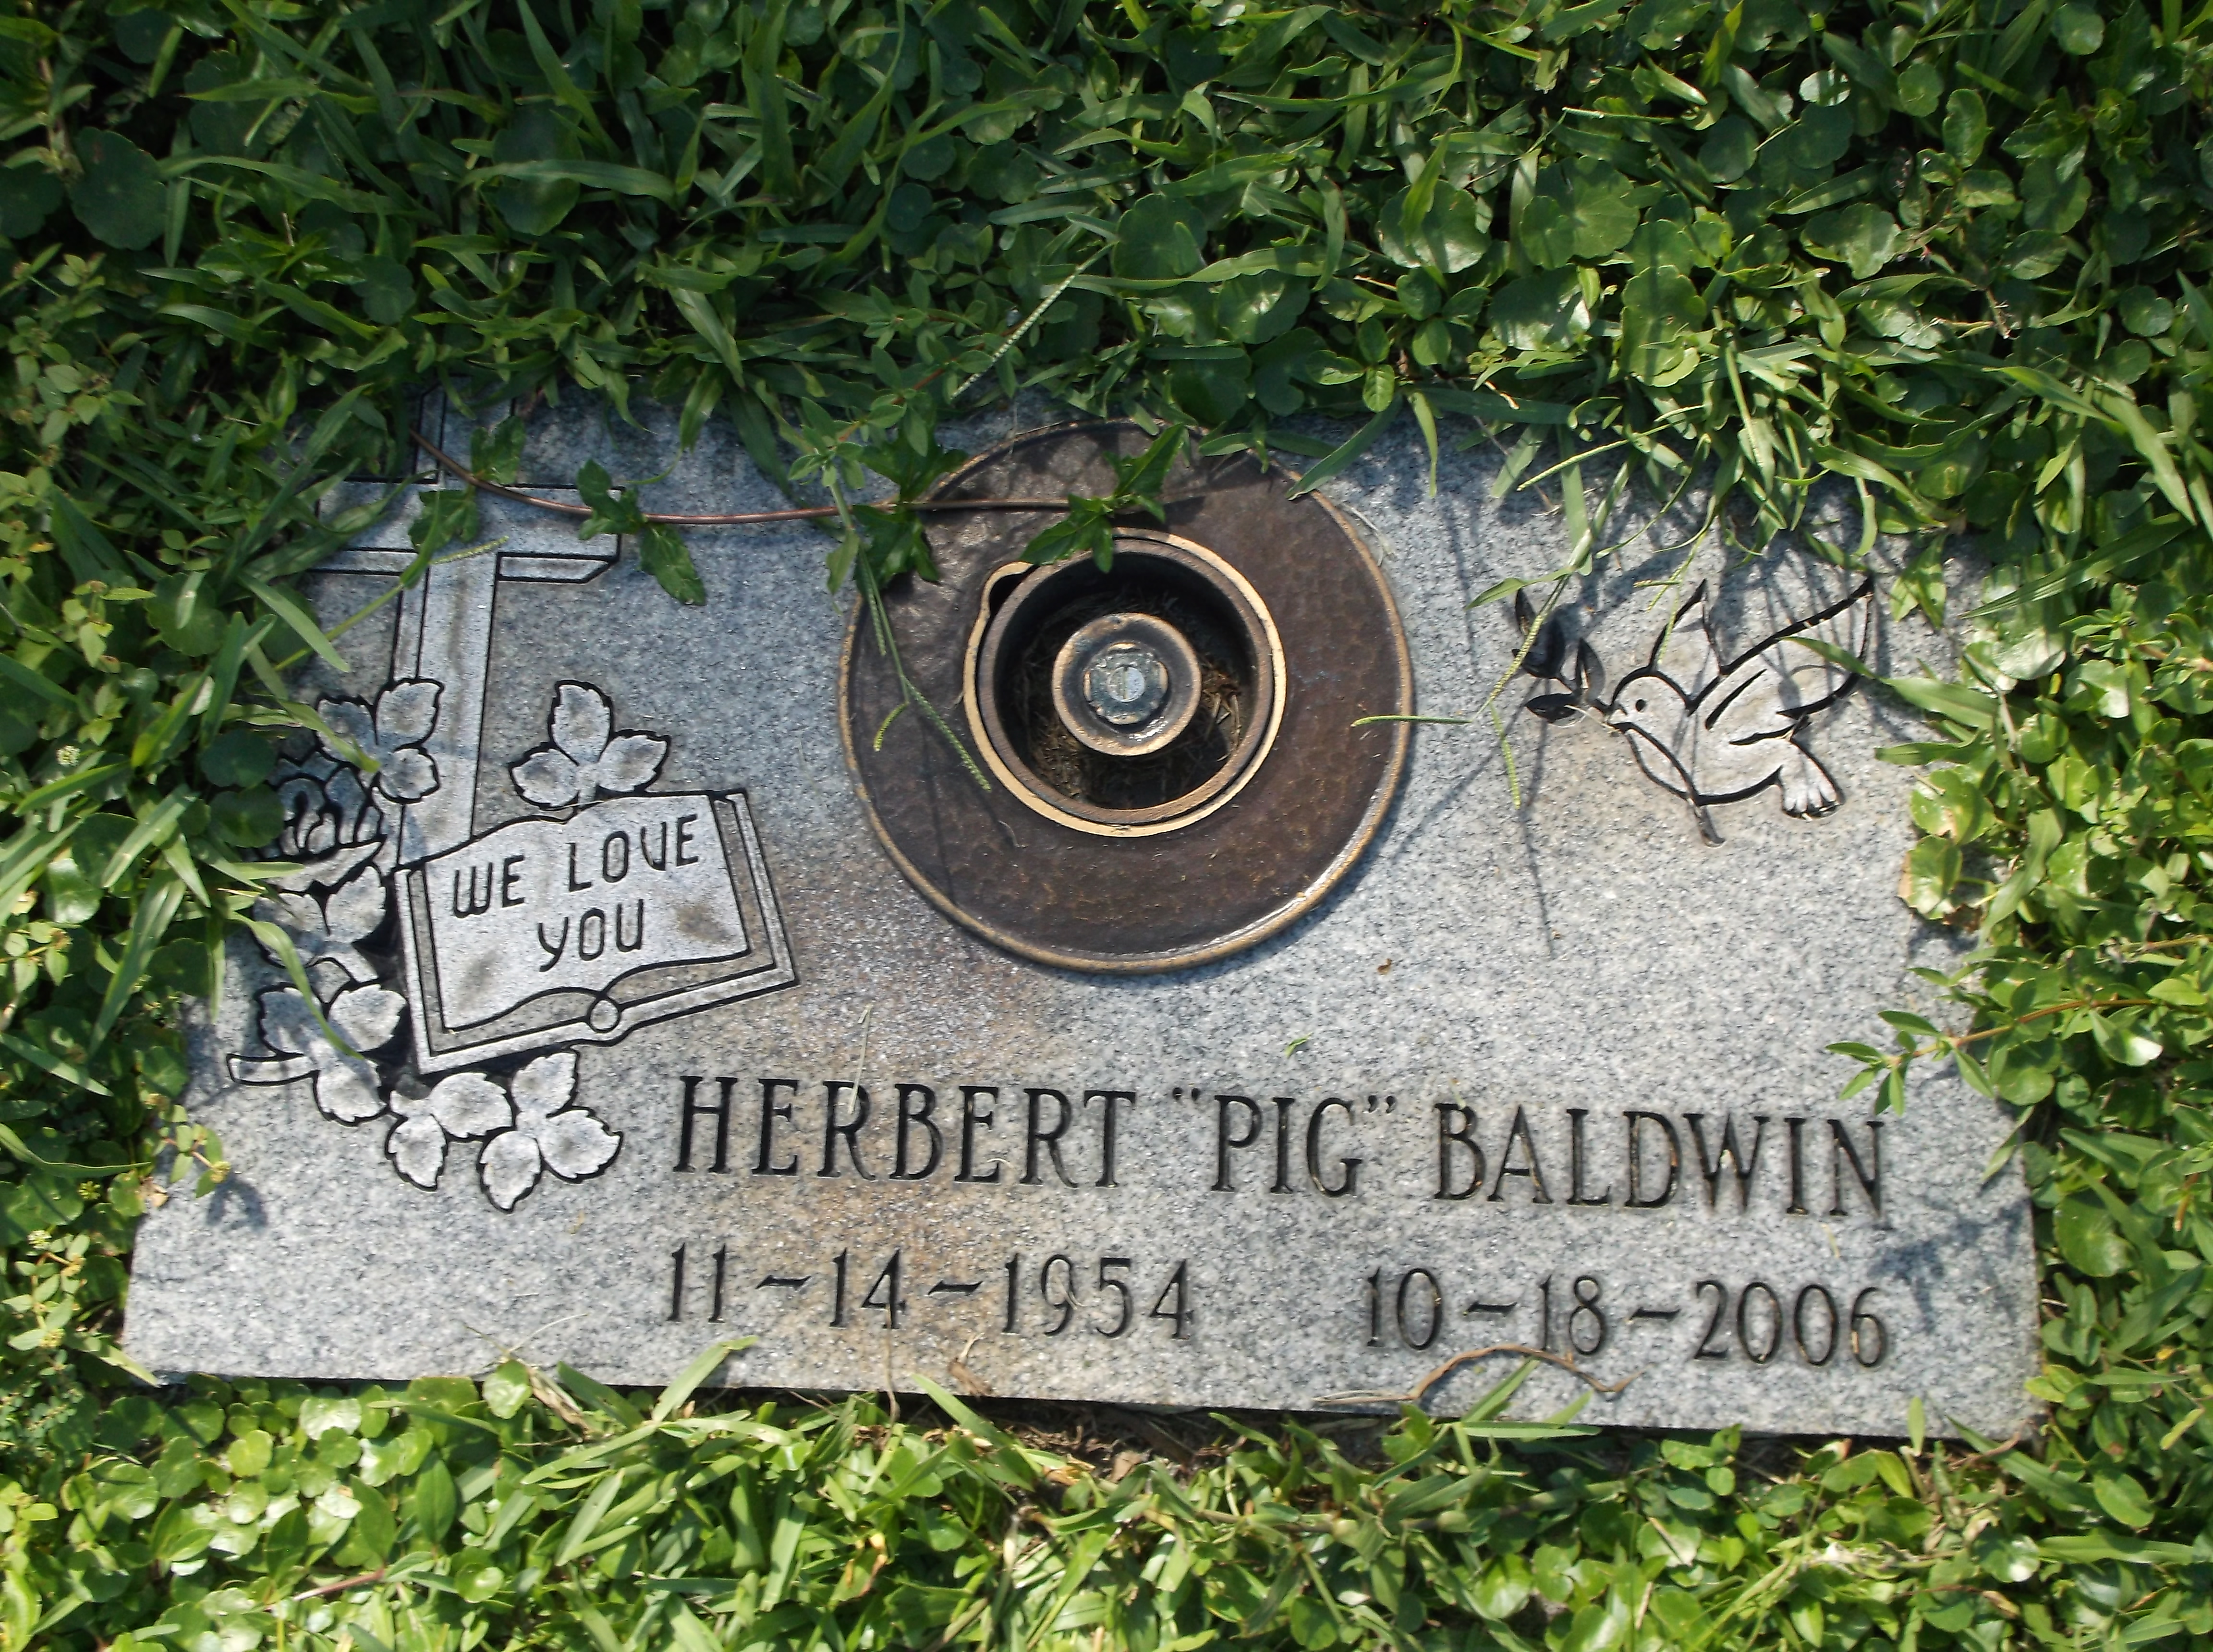 Herbert "Pig" Baldwin